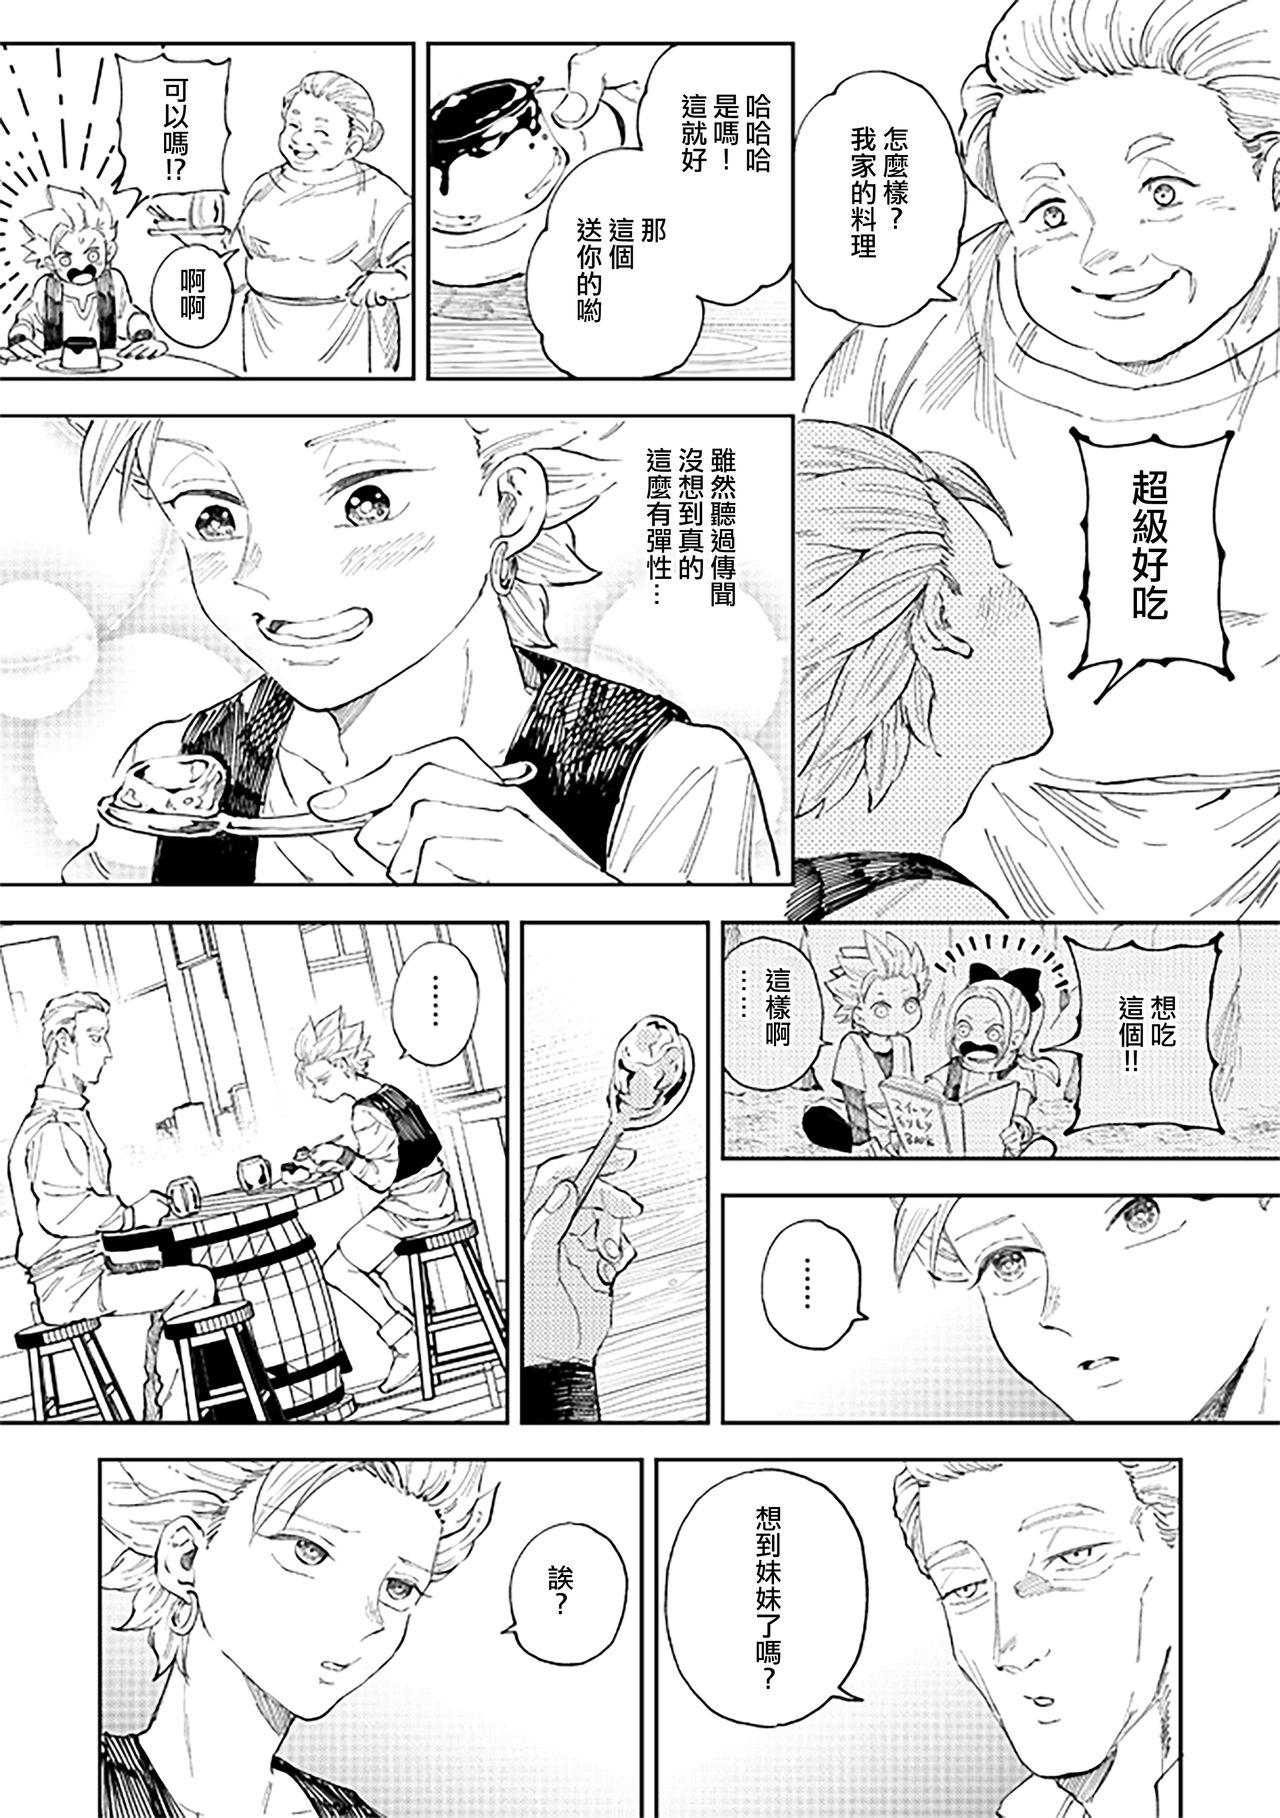 Throat Fuck Rental Kamyu-kun 6 day - Dragon quest xi Cute - Page 8